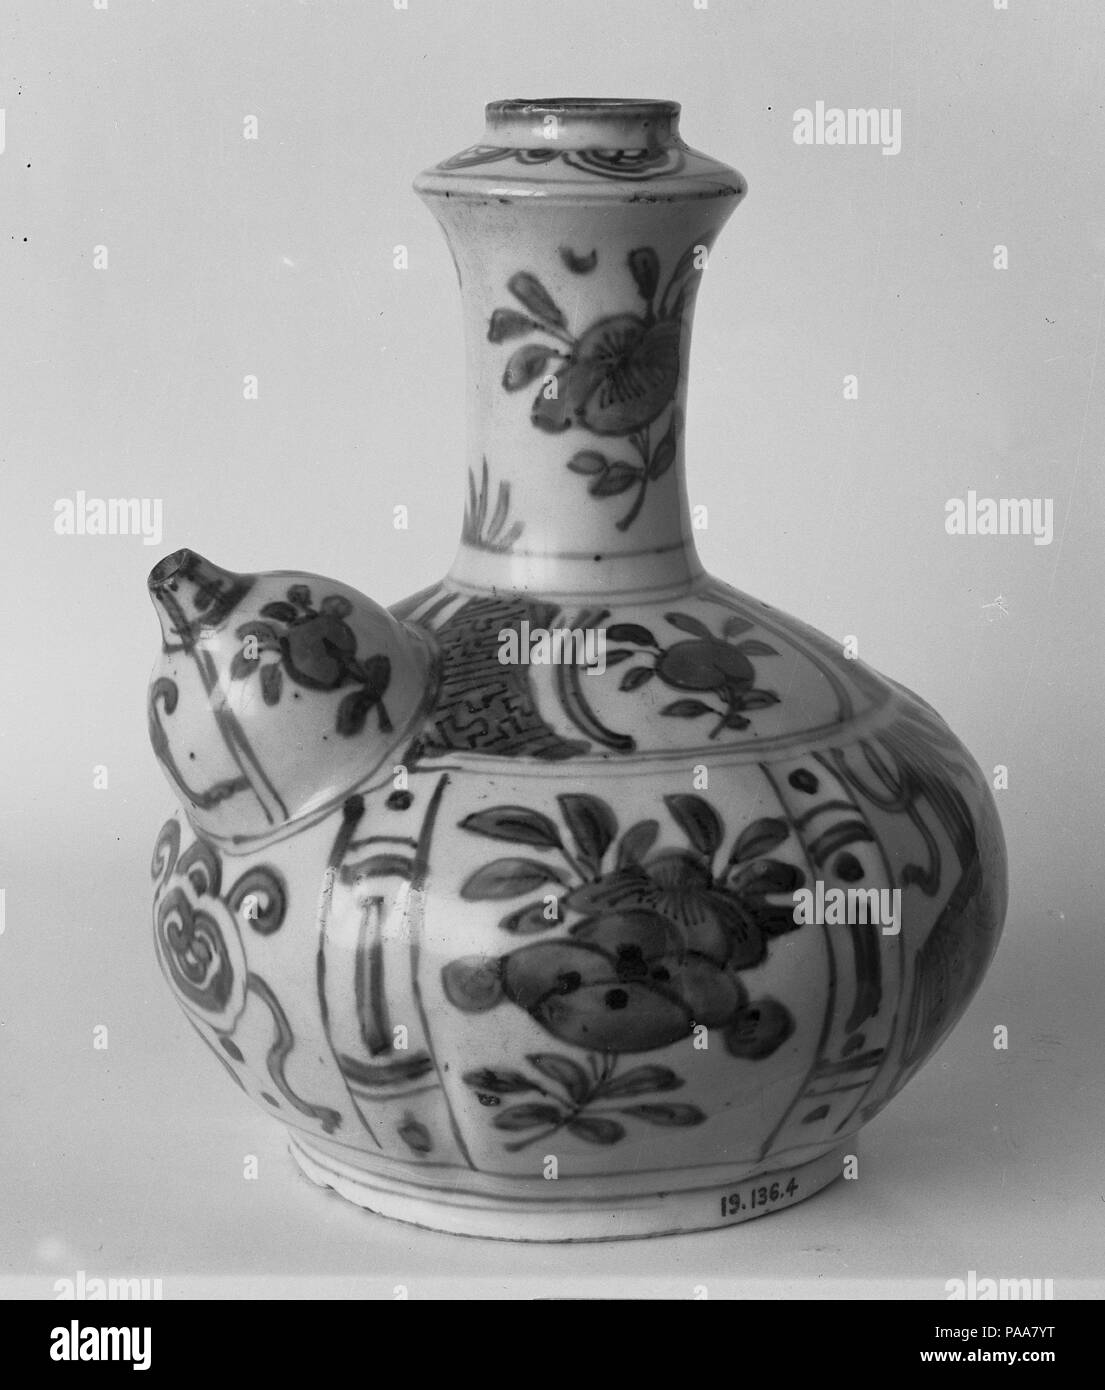 Verter vaso (Kendi) con flores y frutas. Cultura: China. Dimensiones: H. 7  3/8 in. (18,7 cm); W. 5 1/2 in. (14 cm). Fecha: finales de siglo 16. La  producción china de este